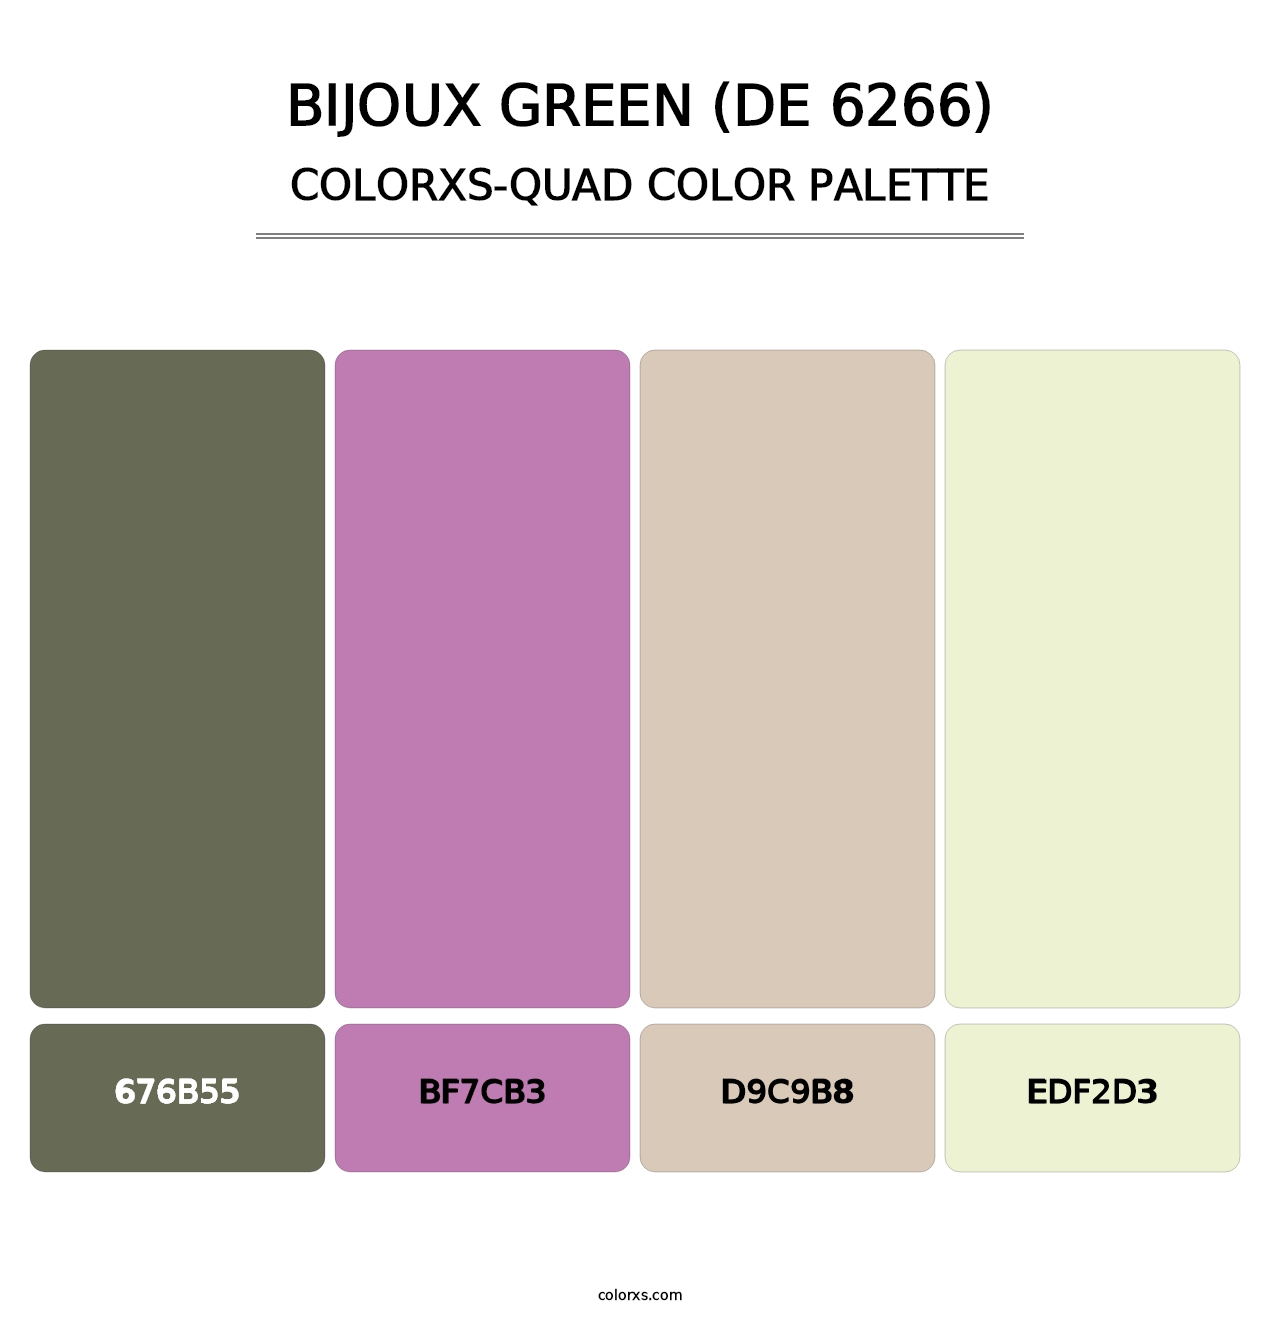 Bijoux Green (DE 6266) - Colorxs Quad Palette